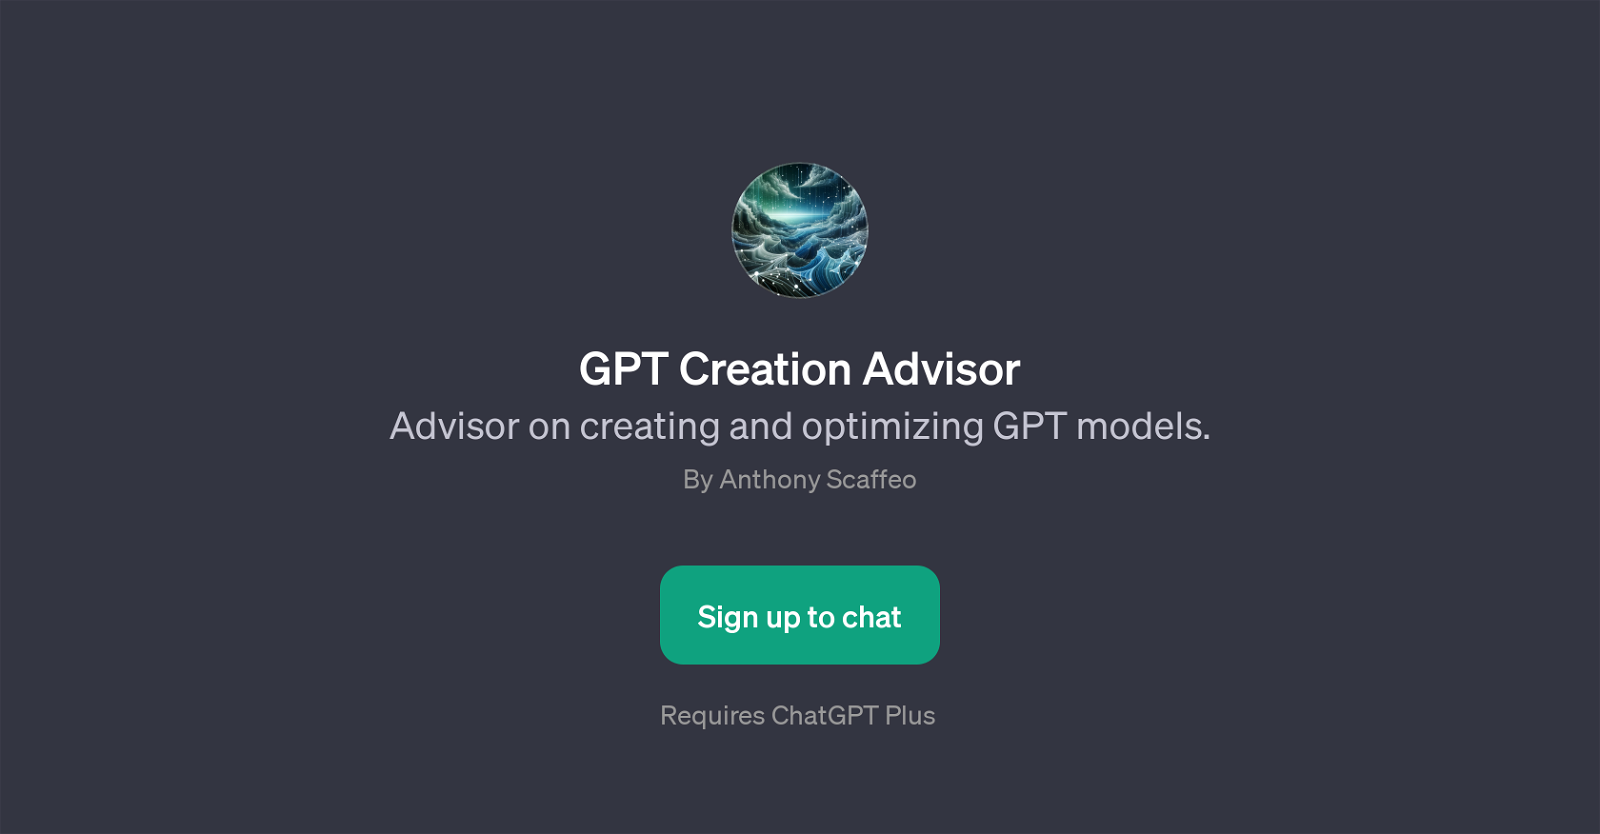 GPT Creation Advisor website